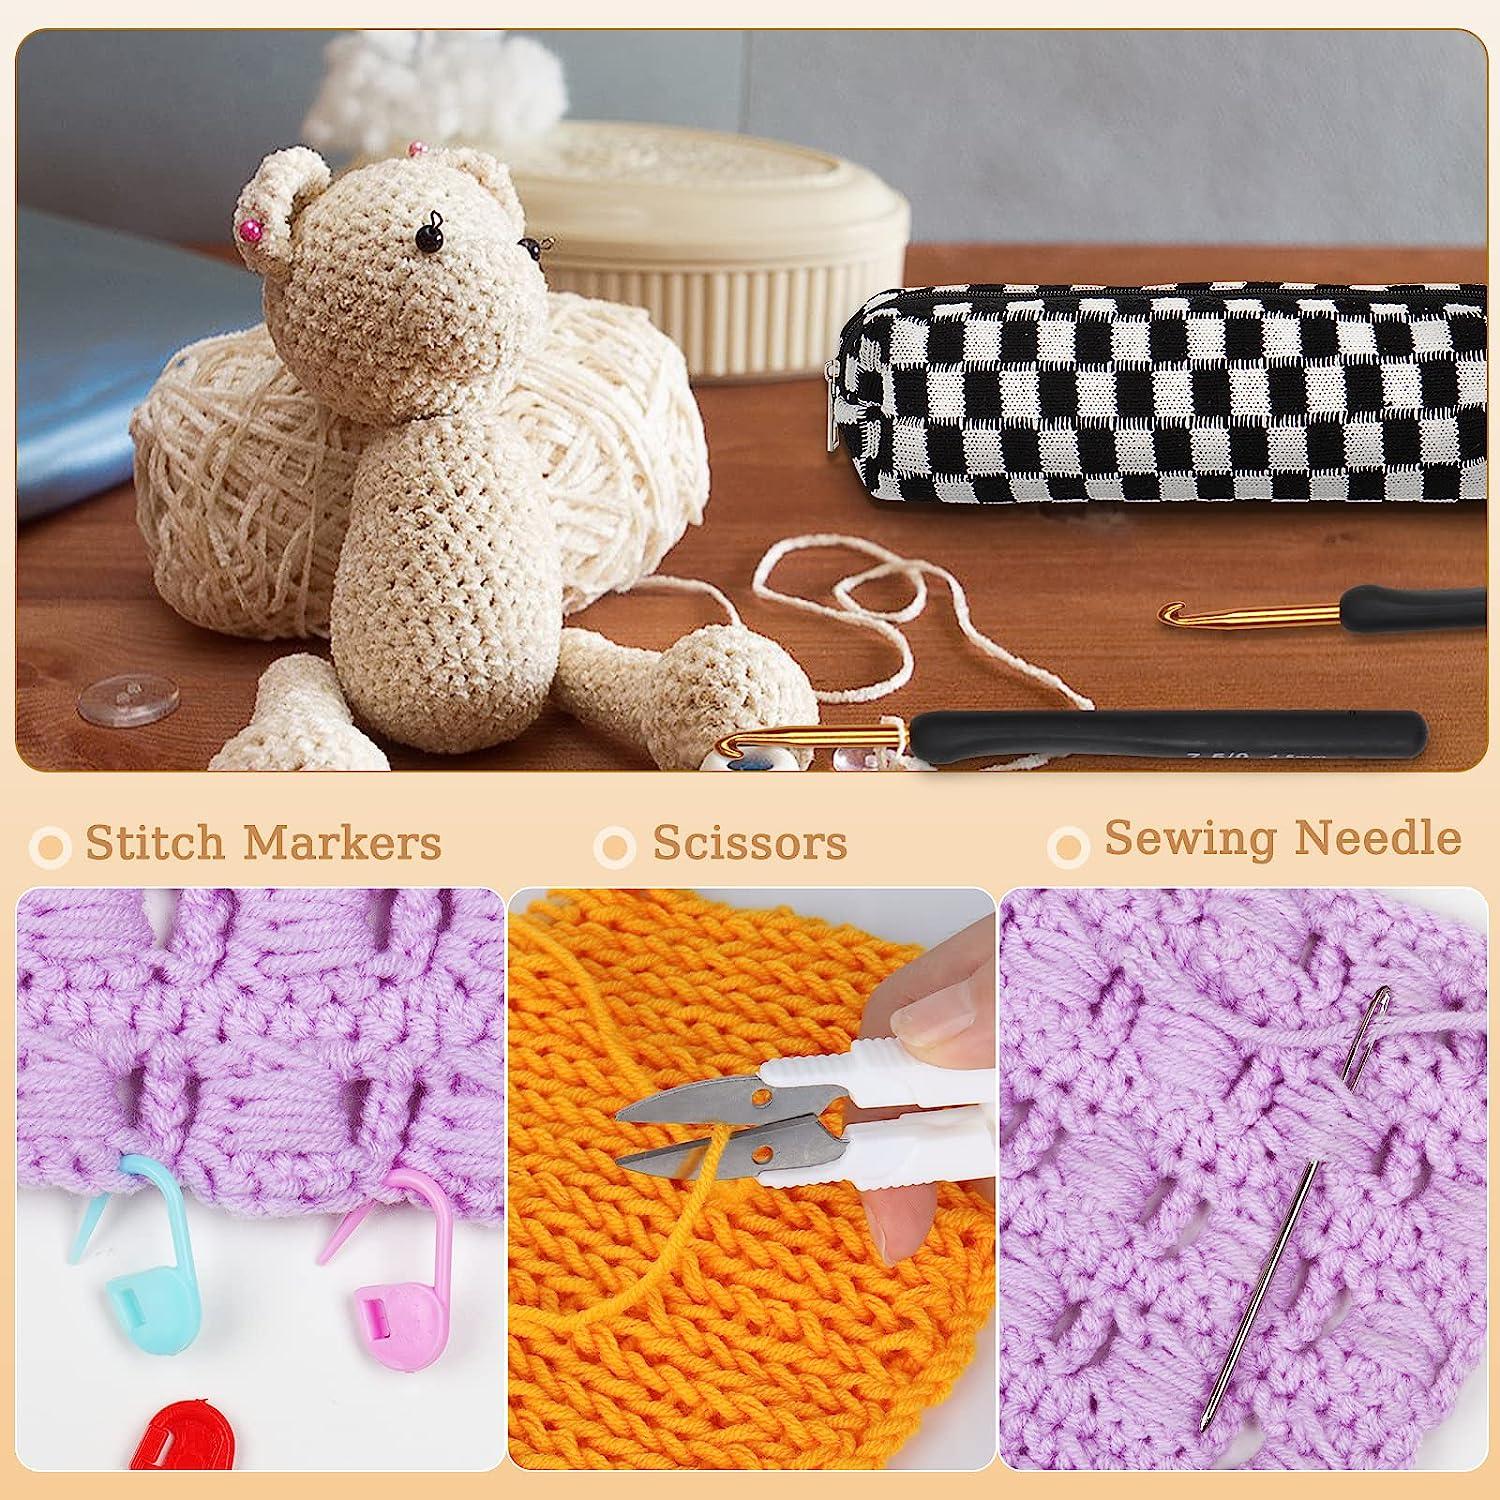 Aeelike Crochet Hooks 8pcs Ergonomic Crochet Hooks Set for Beginners, Metal  Aluminum Crochet Hook with Comfortable Grip, Purple Crochet Needles for